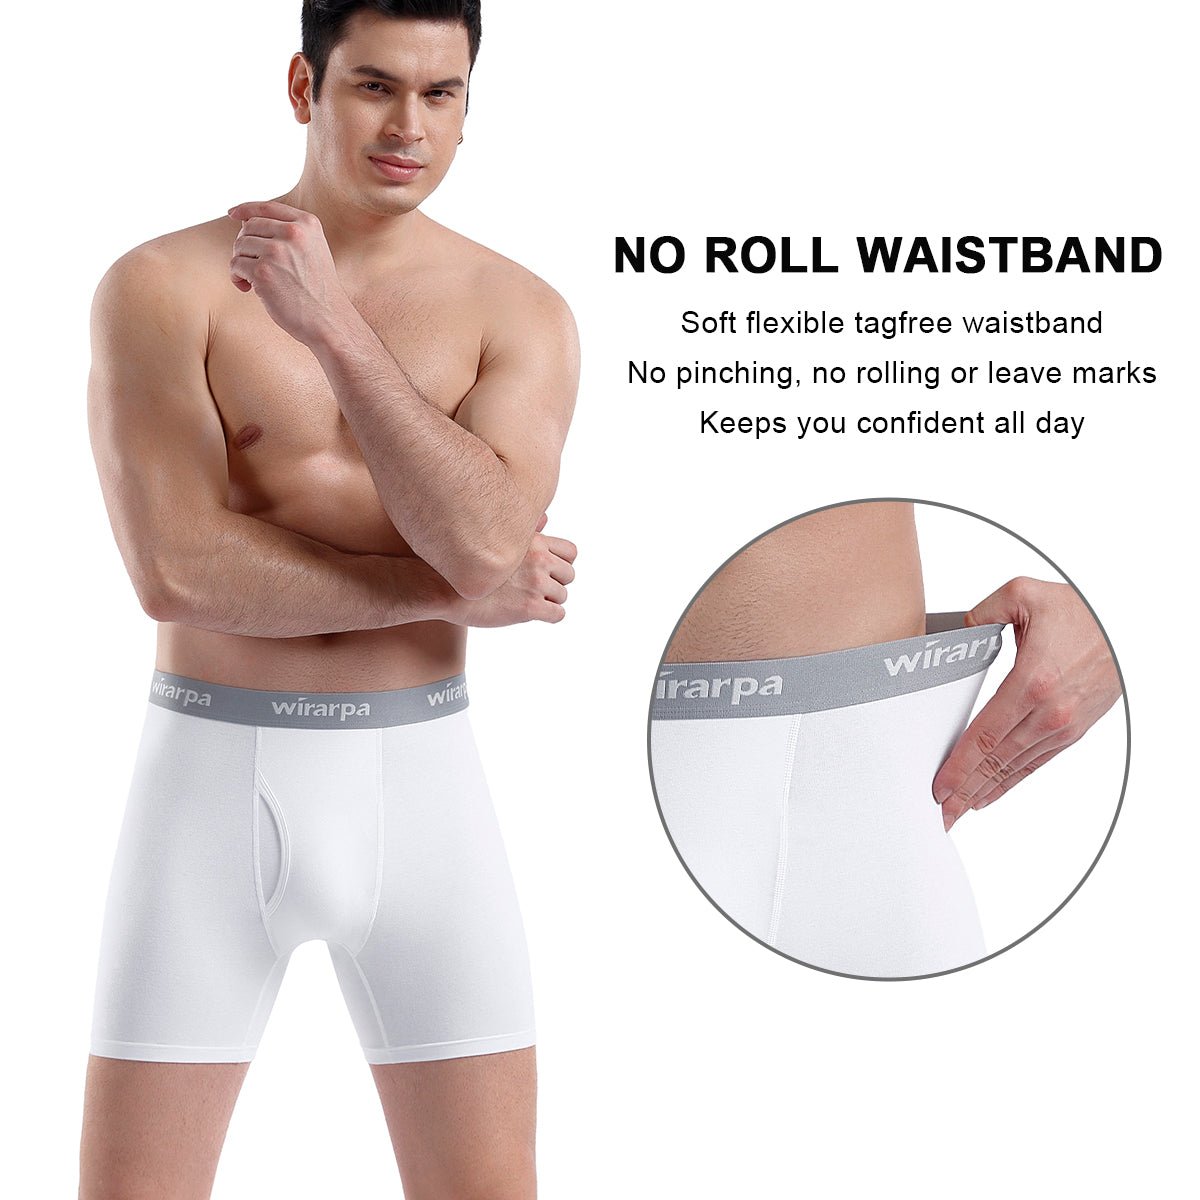 wirarpa Men's Cotton Trunks Soft Stretch Wide Waistband Underwear 4 Pack